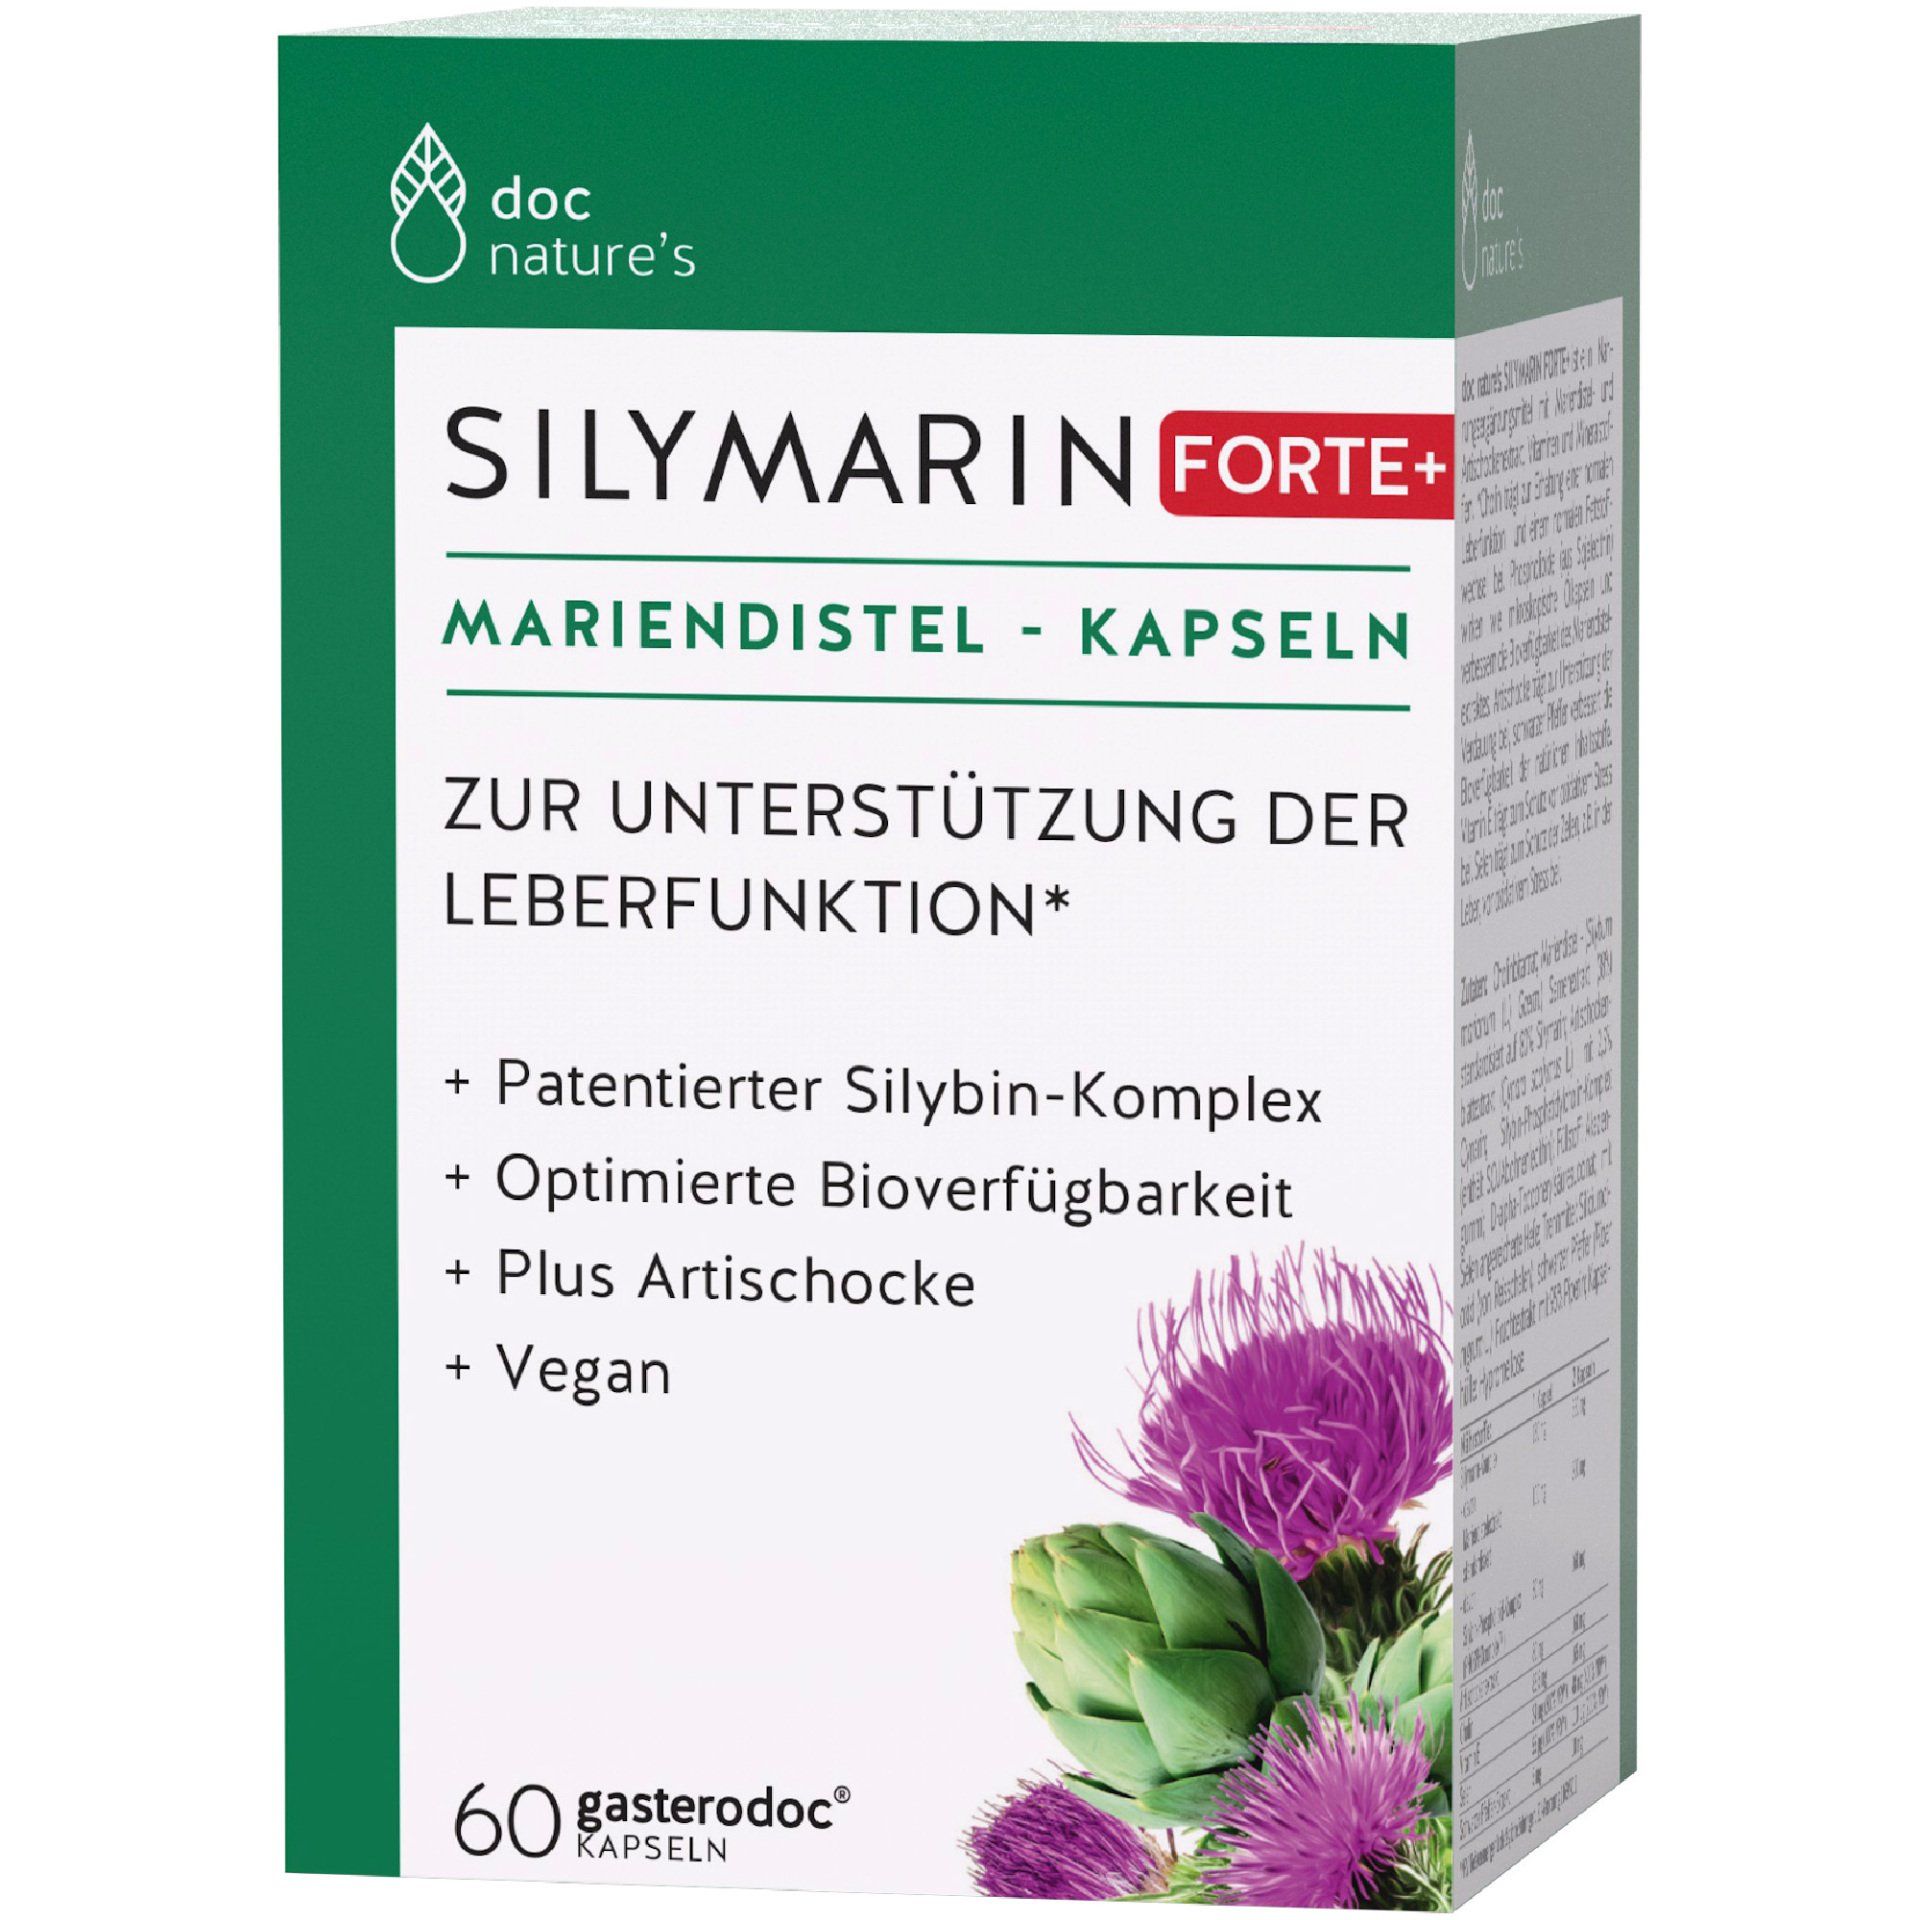 doc nature's SILYMARIN FORTE+ MARIENDISTEL-KAPSELN